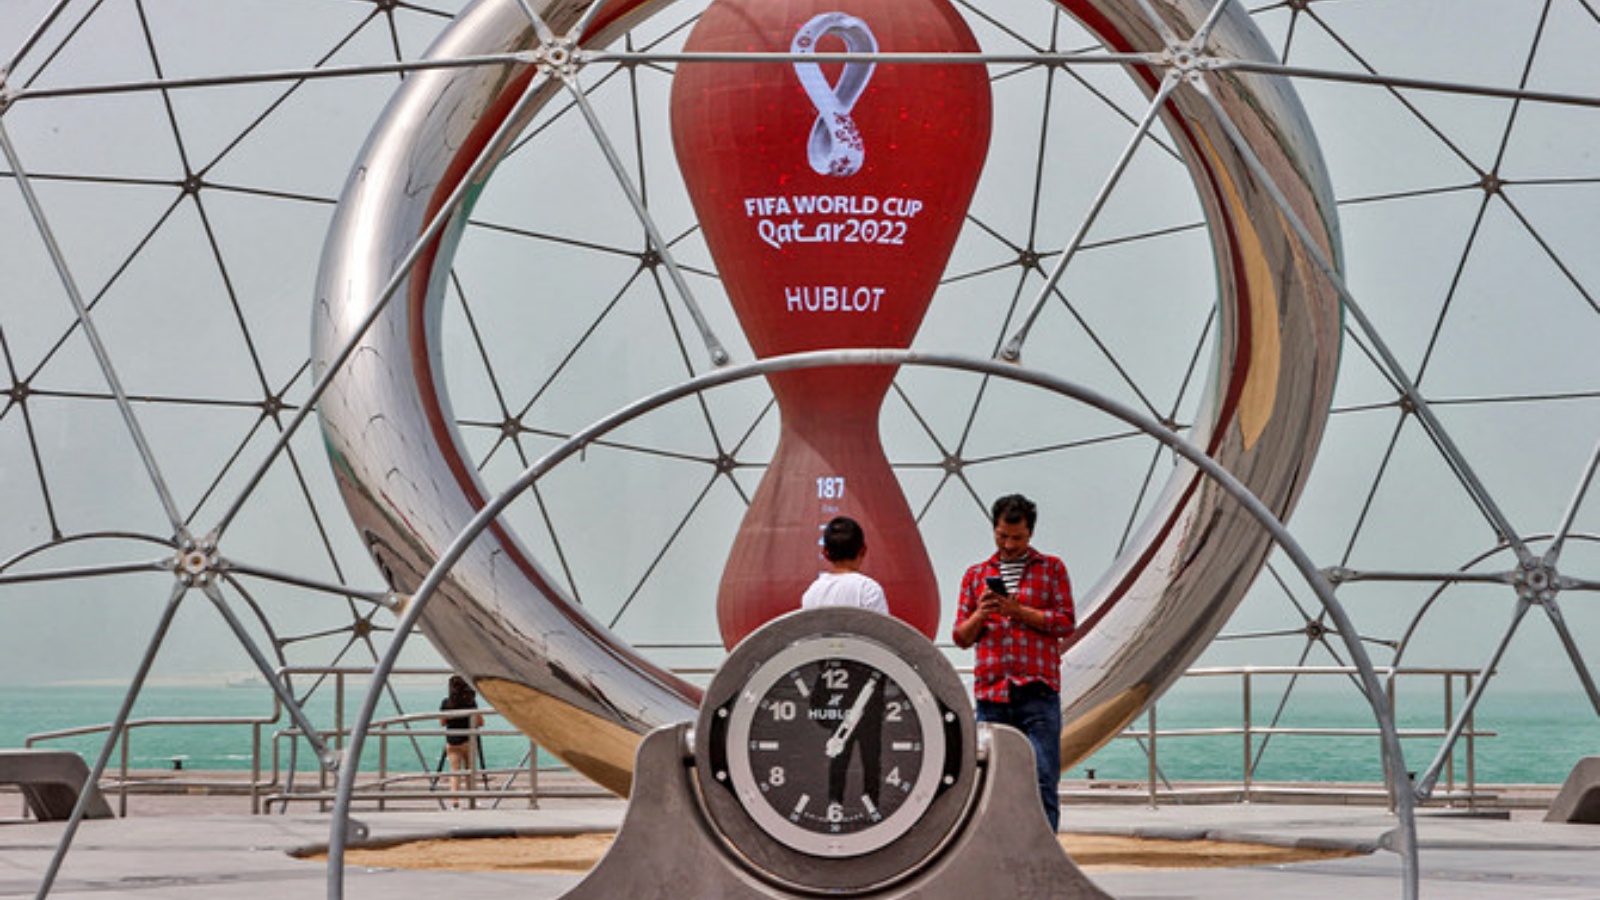 أشخاص عند الساعة التي تعد الأيام التي تبدأ فيها بطولة كأس العالم لكرة القدم قطر 2022 في العاصمة القطرية الدوحة في 17 مايو 2022